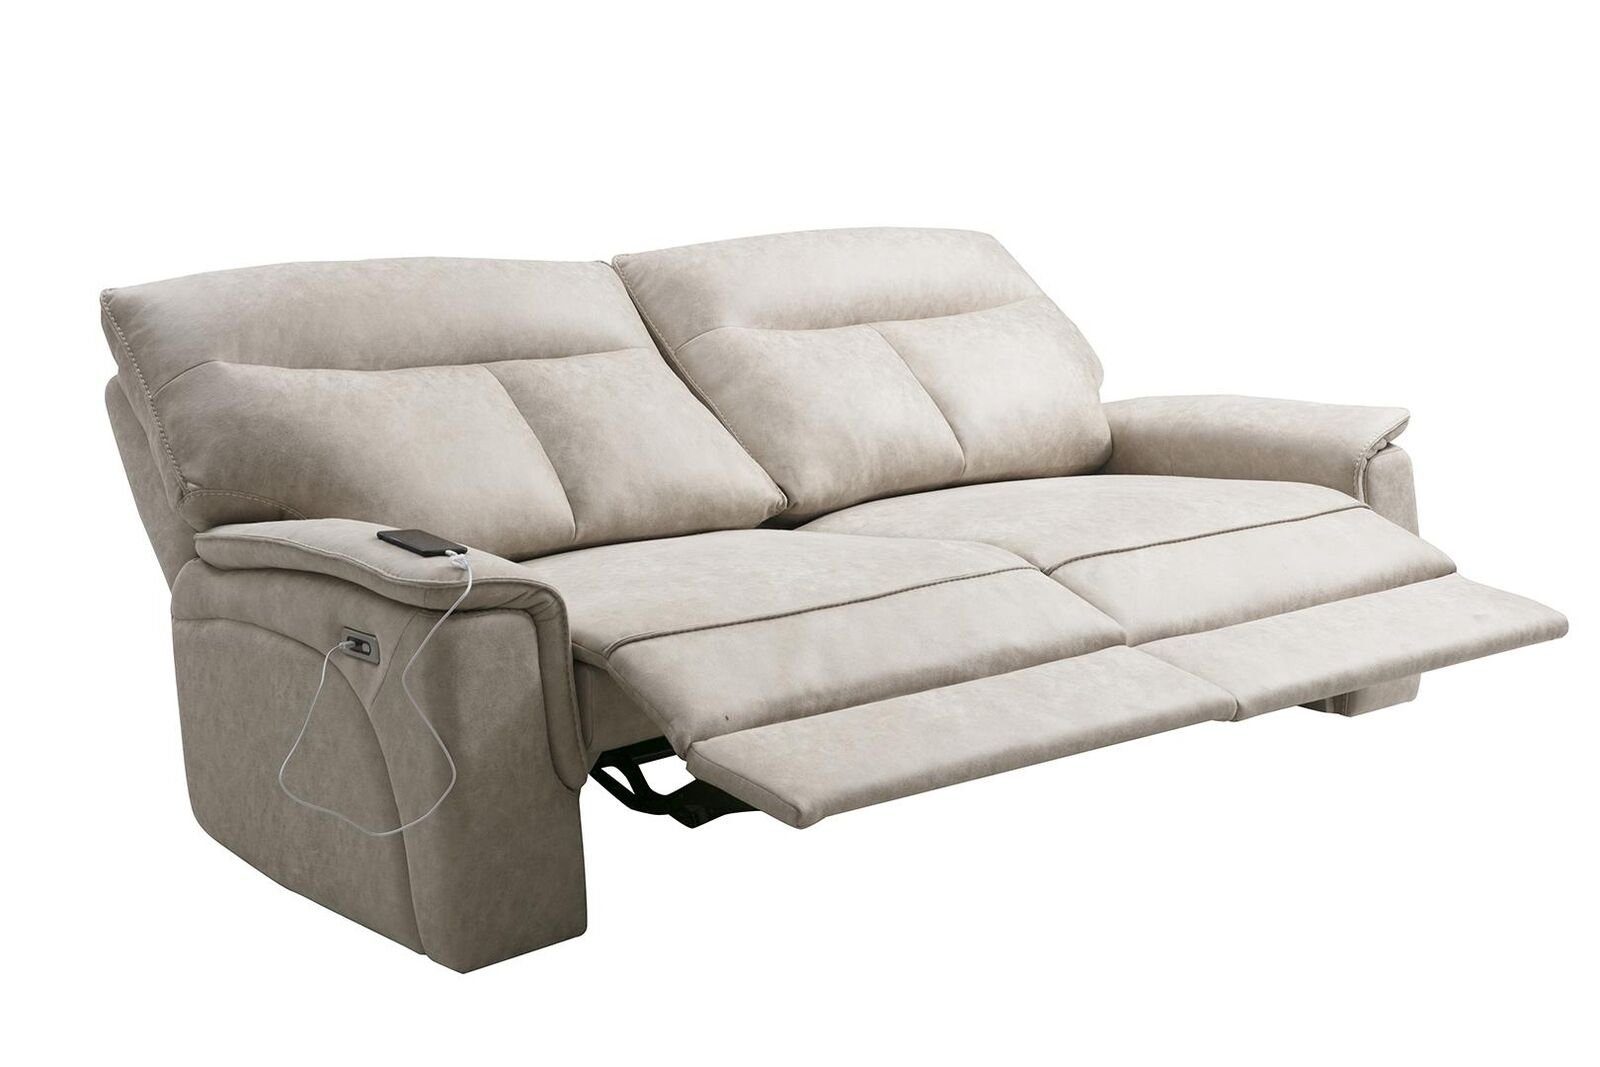 JVmoebel Sofa Set Dreisitzer Couch 2 Wohnzimmer, Garnitur Made in Teile, Europa Design Modern